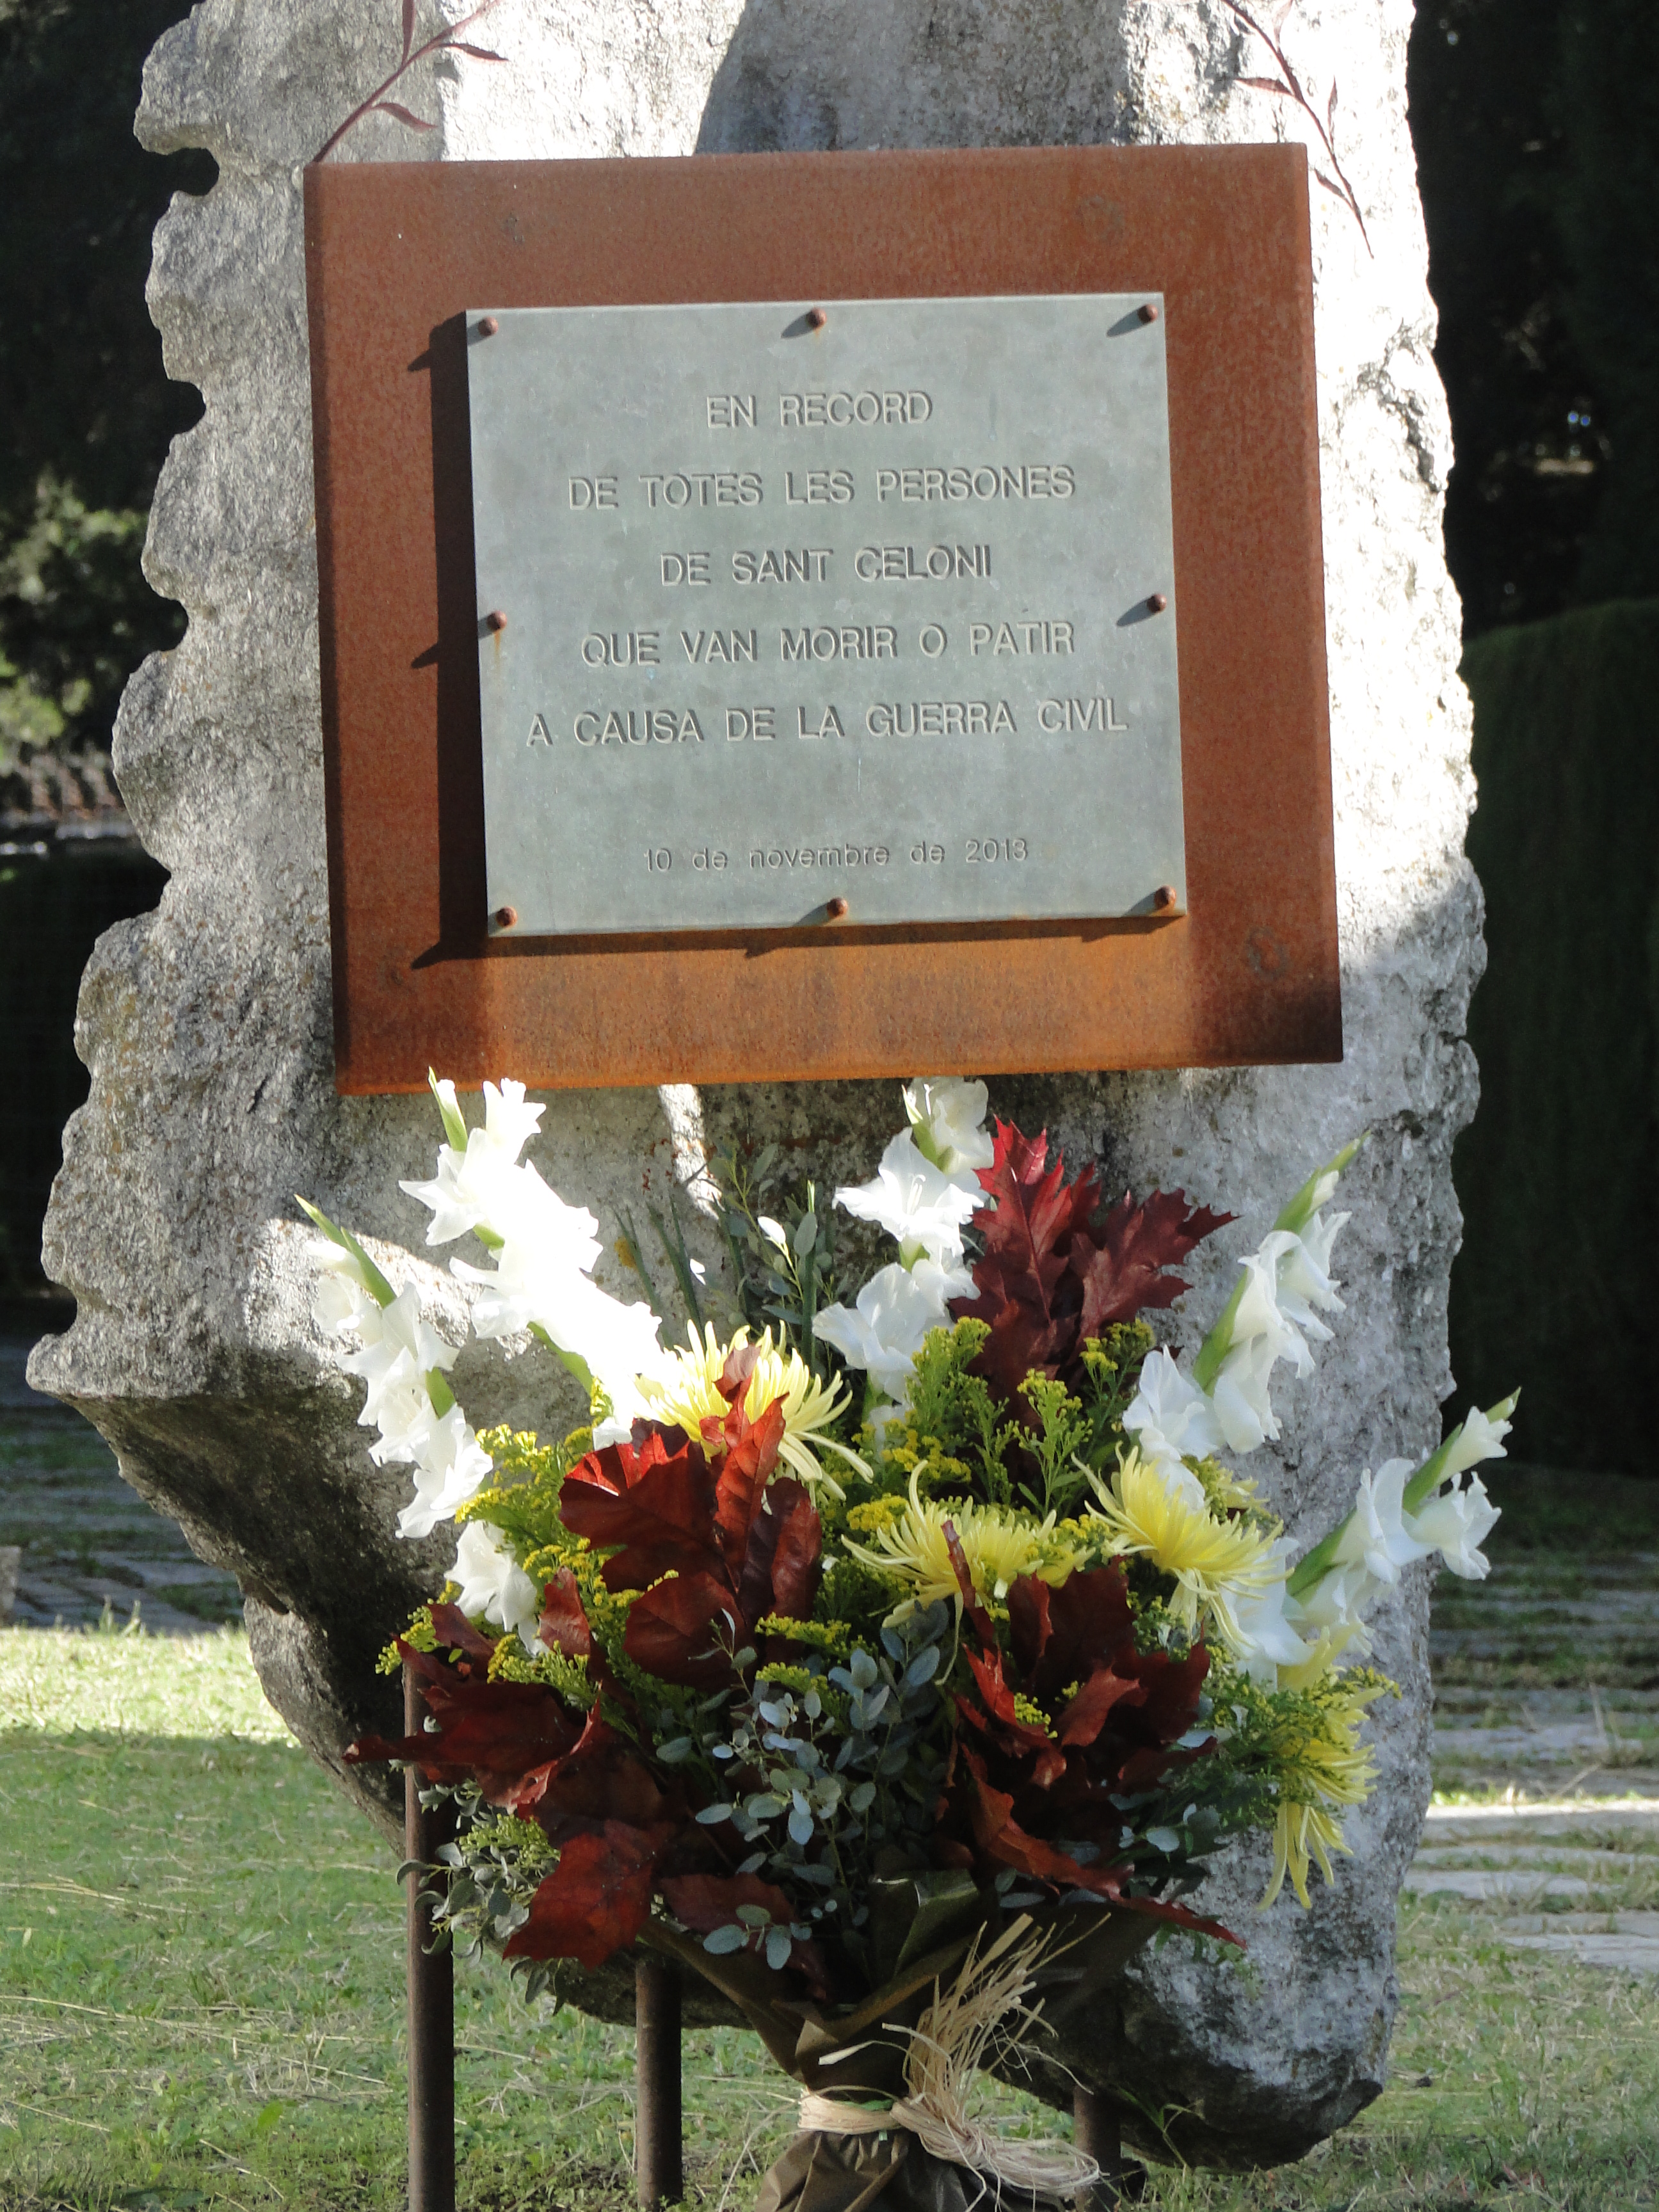 VI Jornades de la Memòria Històrica: Memorial pels celonins que van morir o patir als camps de concentració nazis - Foto 45084931